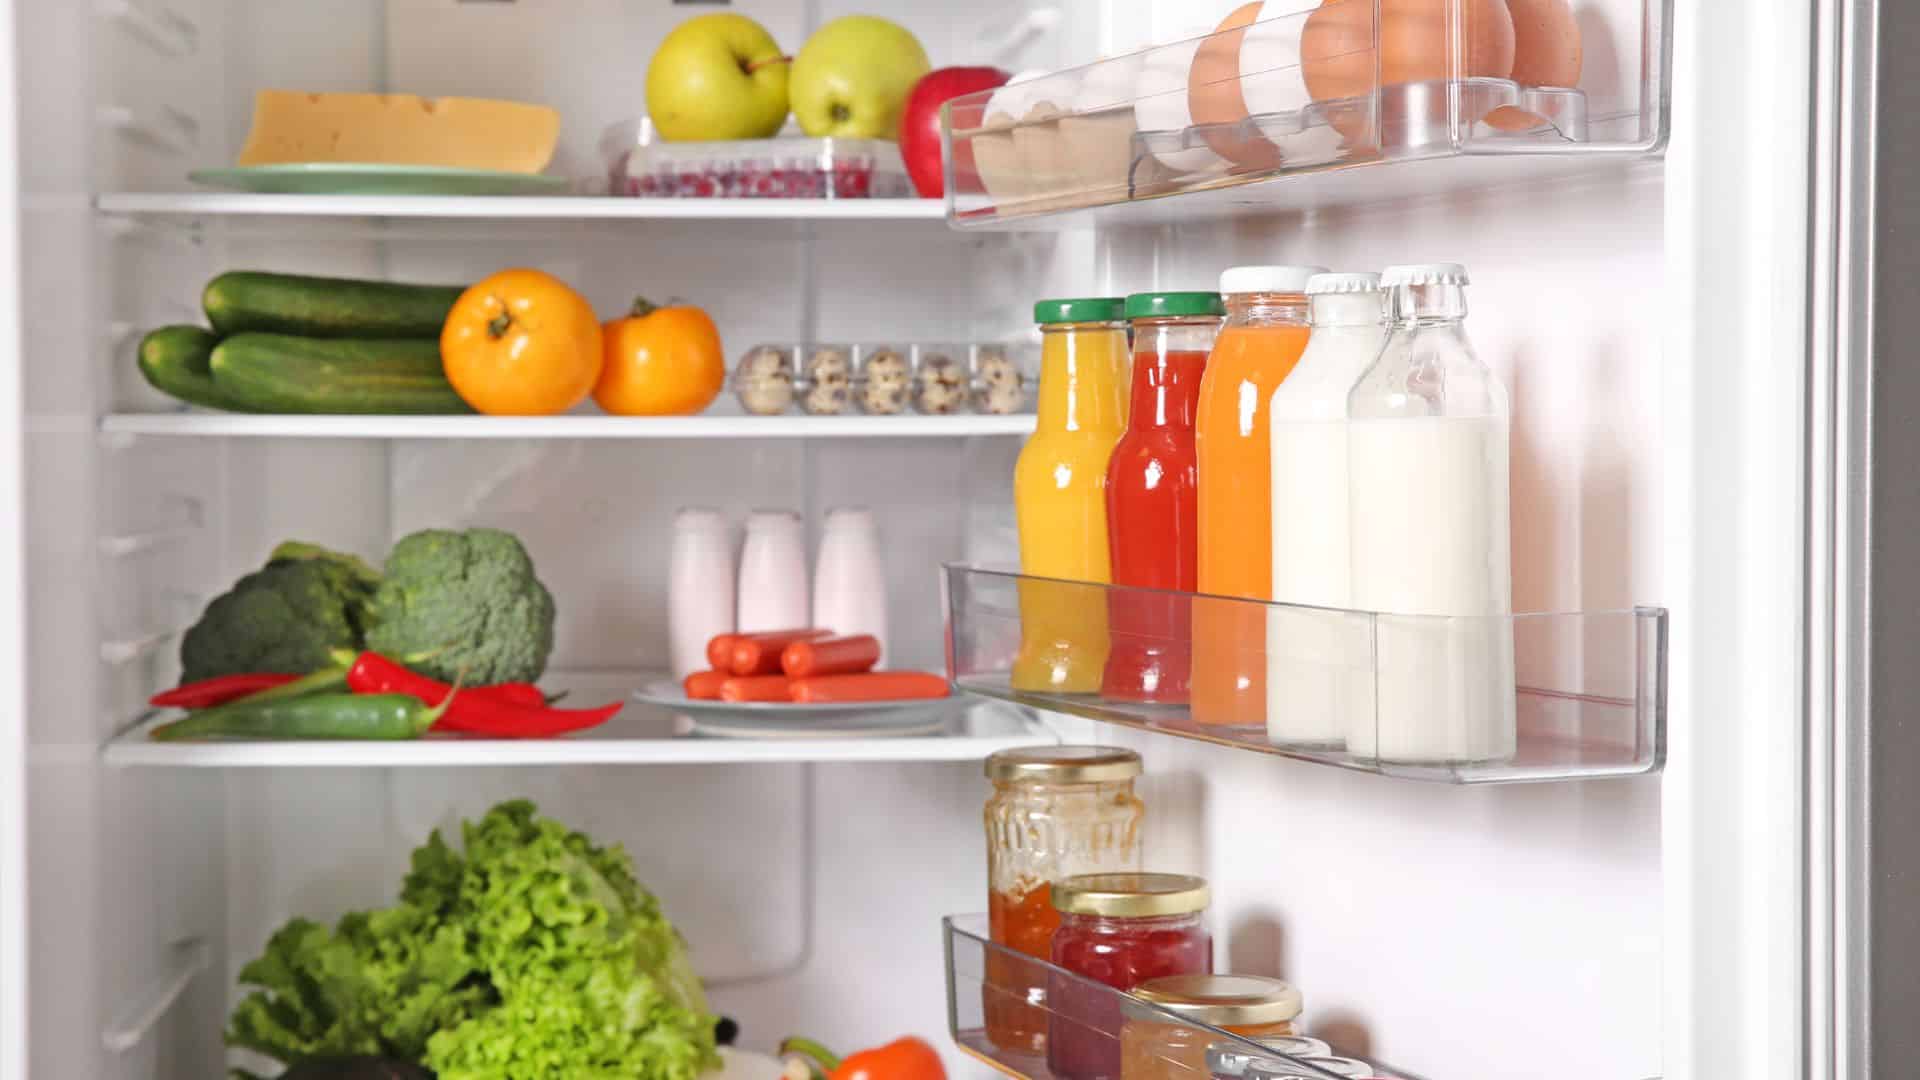 aliments a eviter dans votre refrigerateur